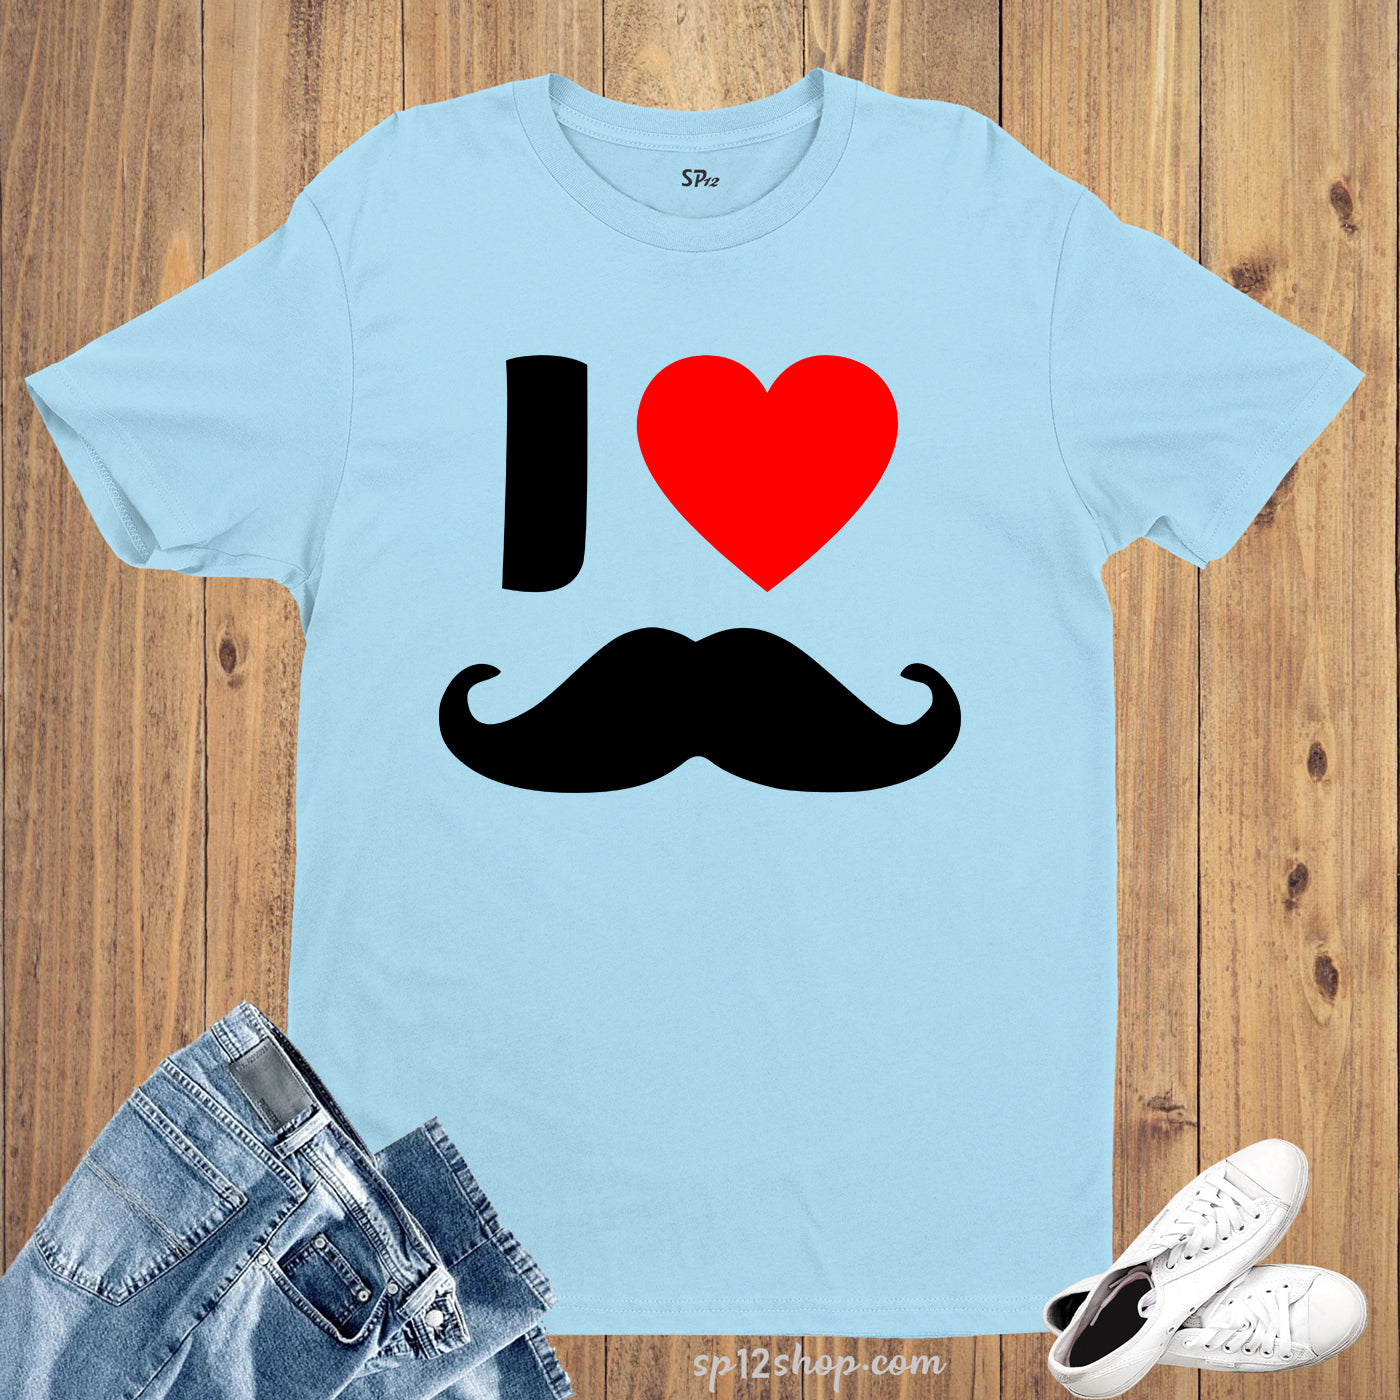 I Love Moustache T Shirt